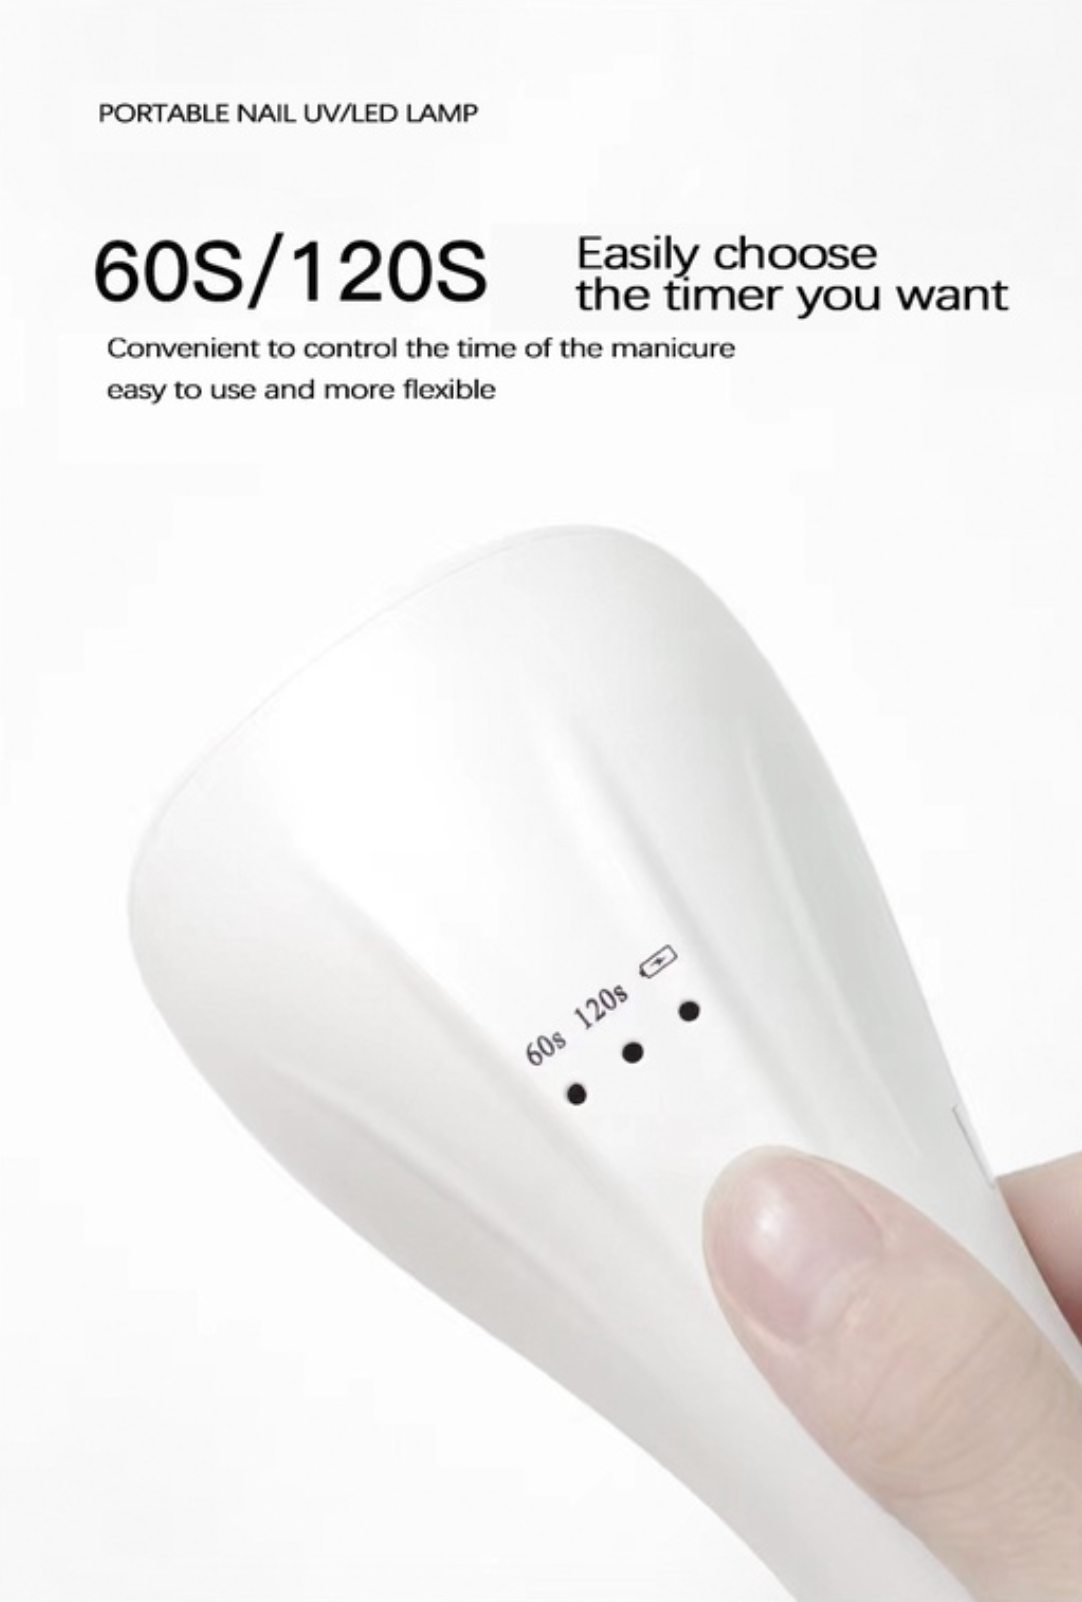 Lampa UV/LED mini Fast Lamp, flexibila , cablu USB, pentru manichiura si pedichiura, culoare White